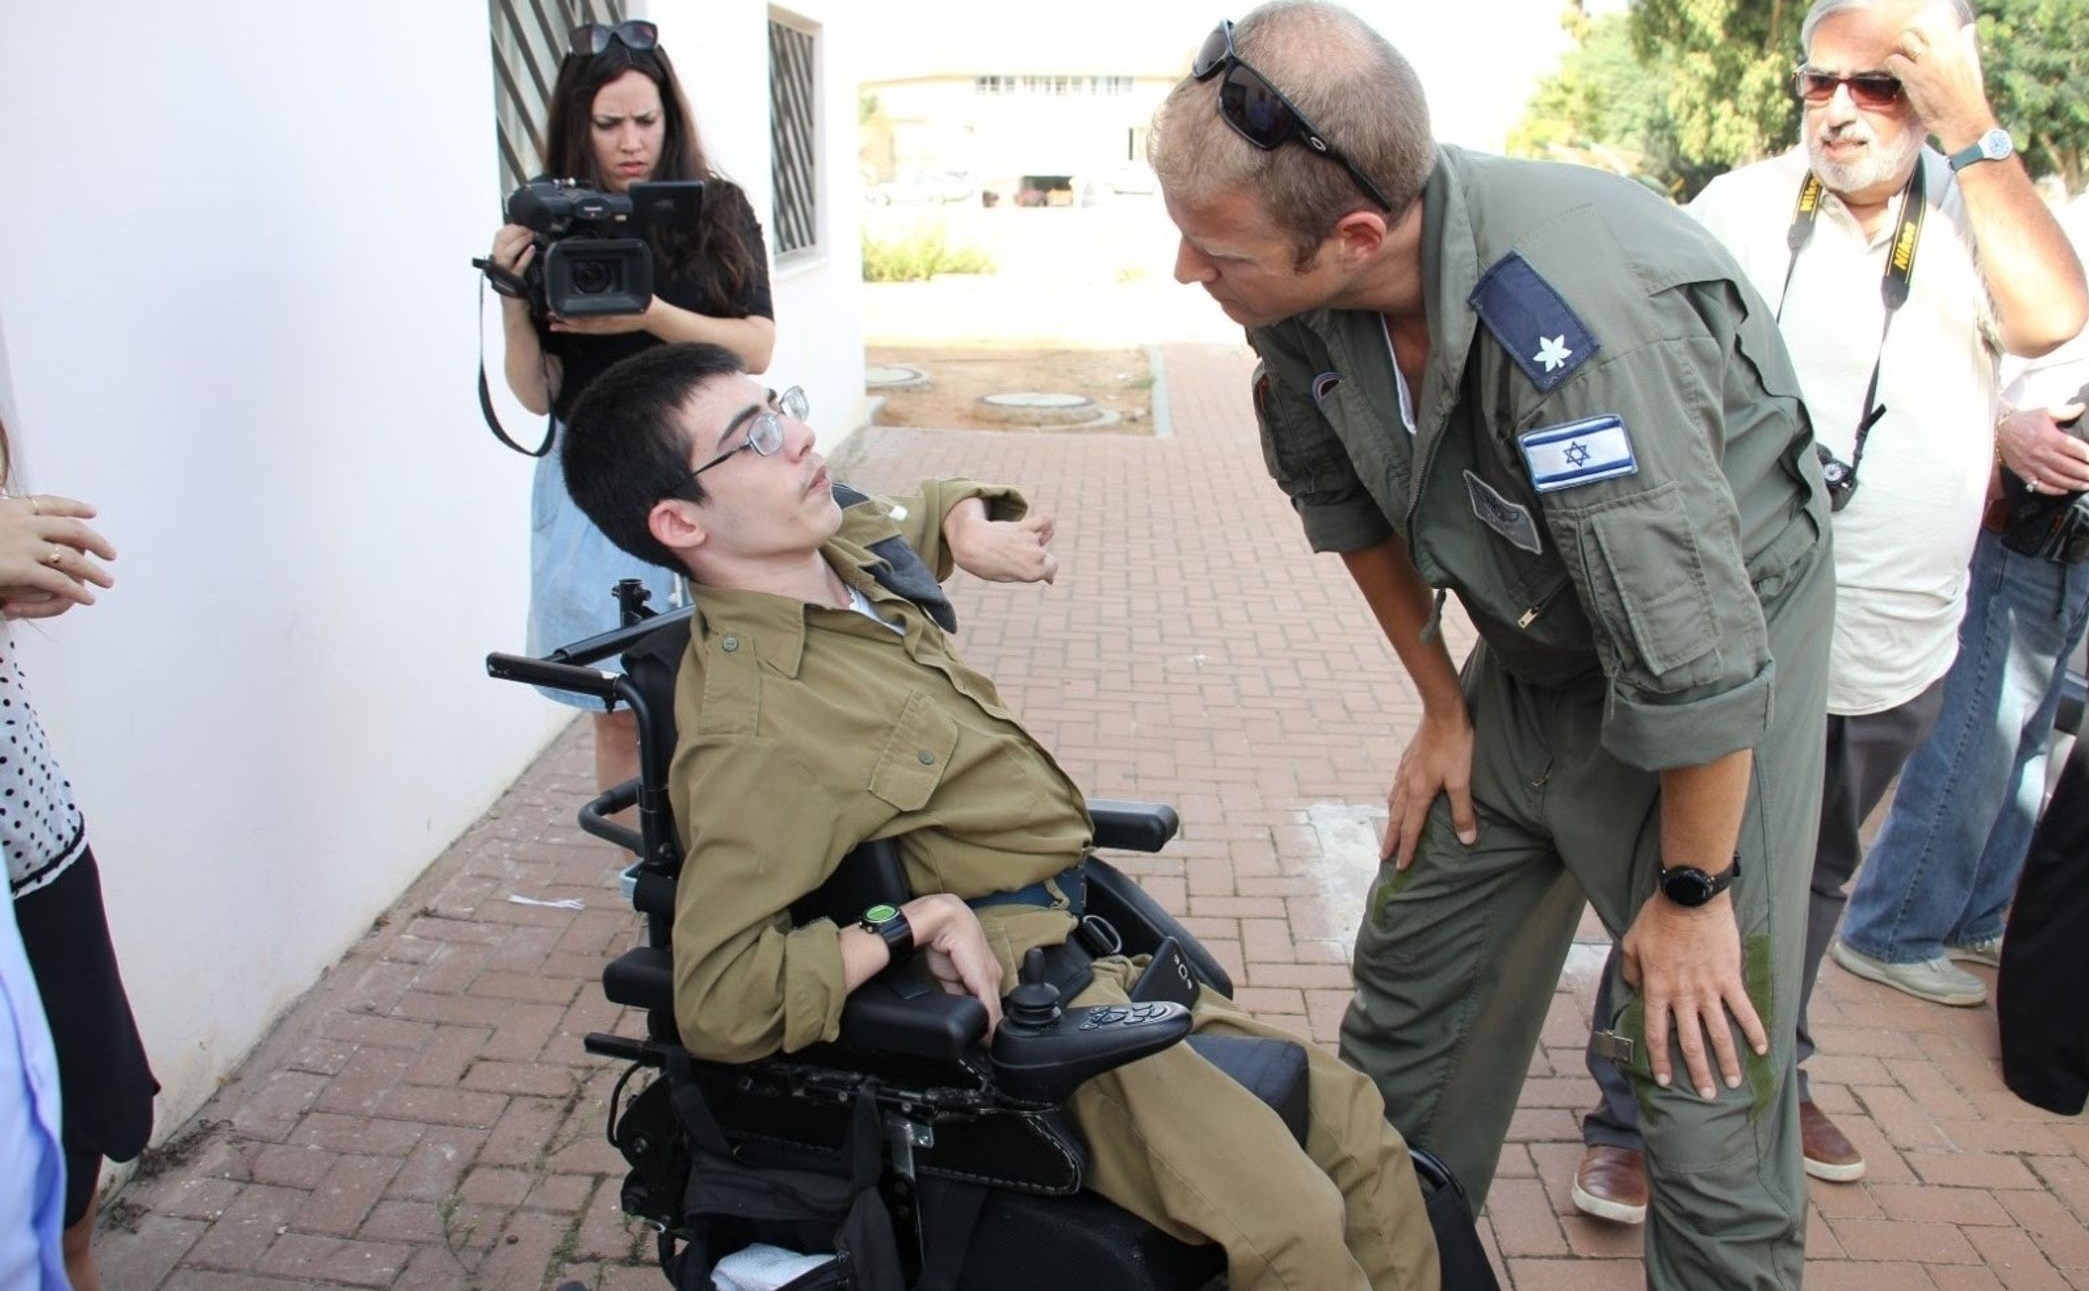 رشد بی سابقه آمار تلفات جسمانی در صفوف ارتش اسرائیل